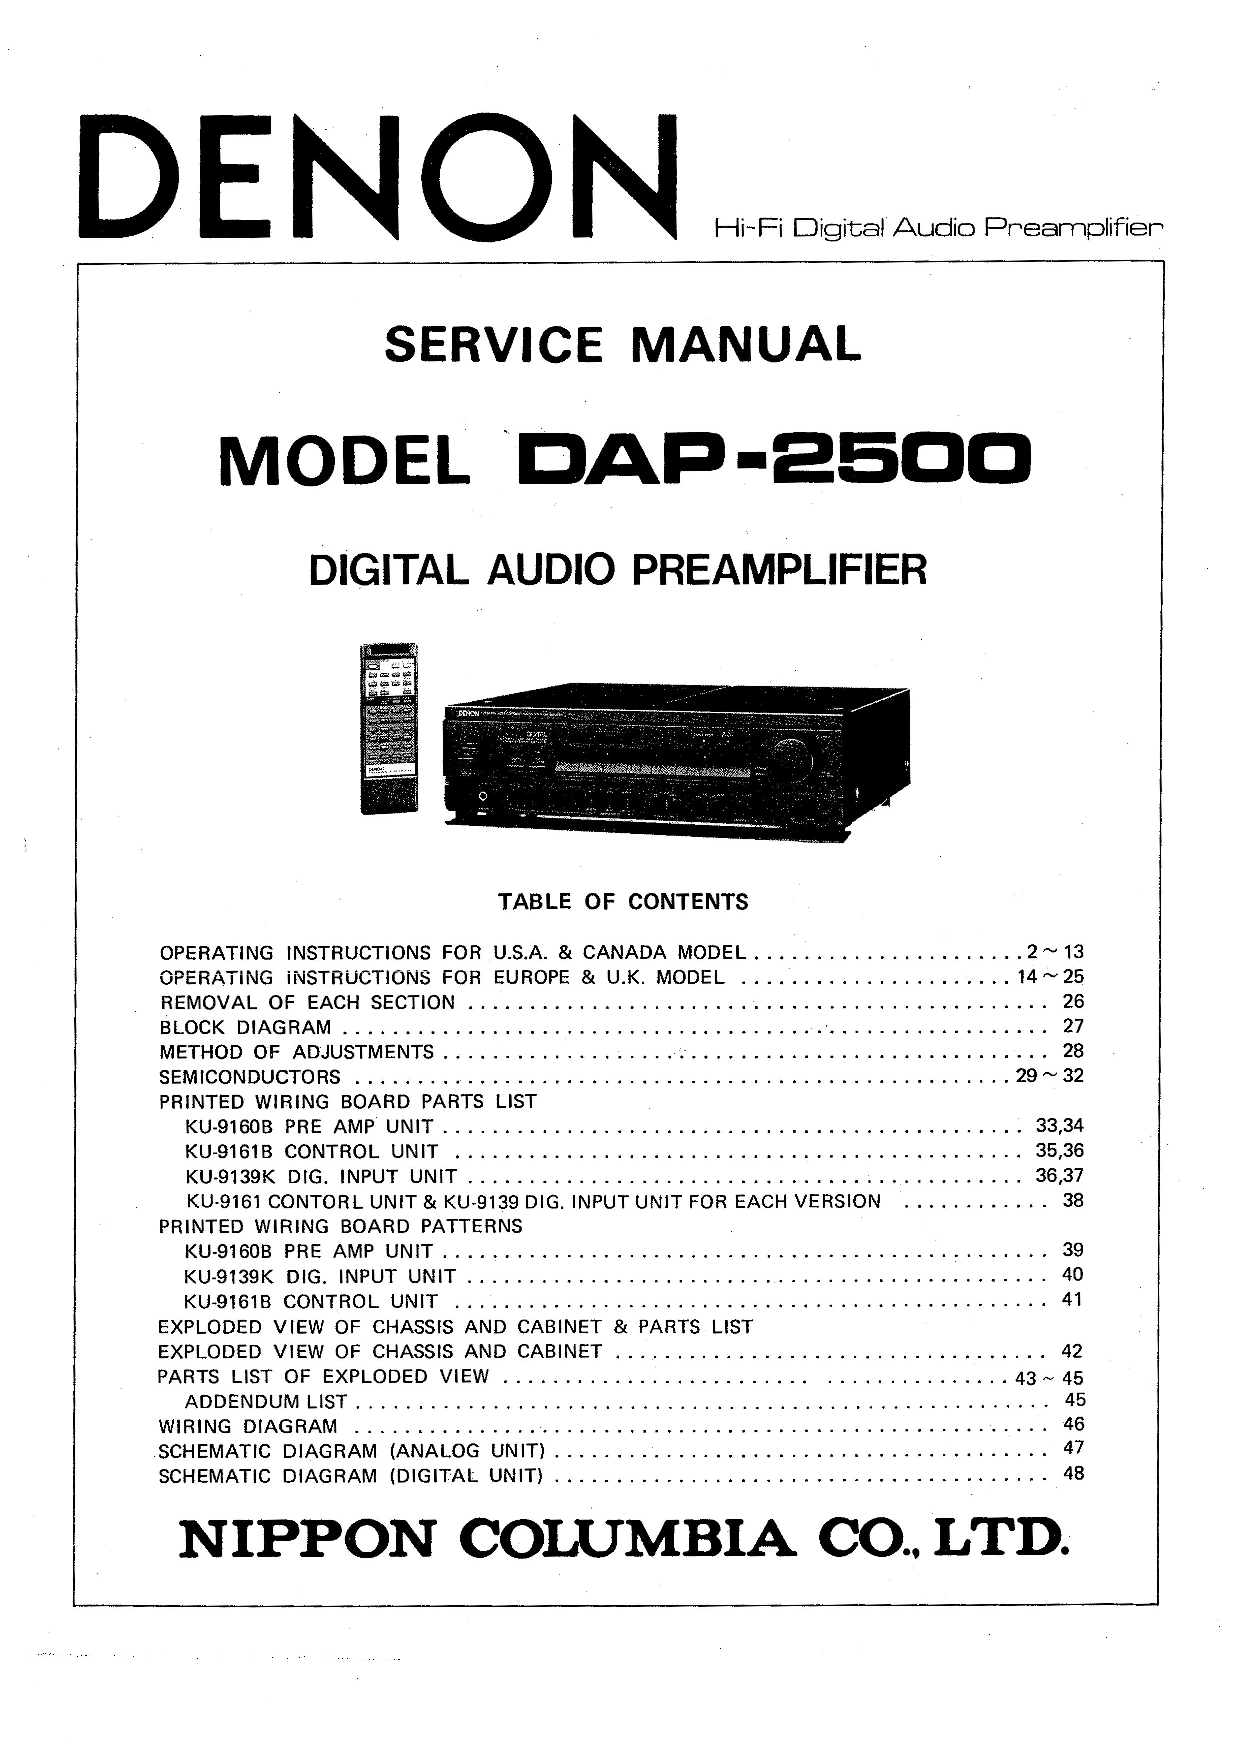 Denon DAP-2500 Service Manual